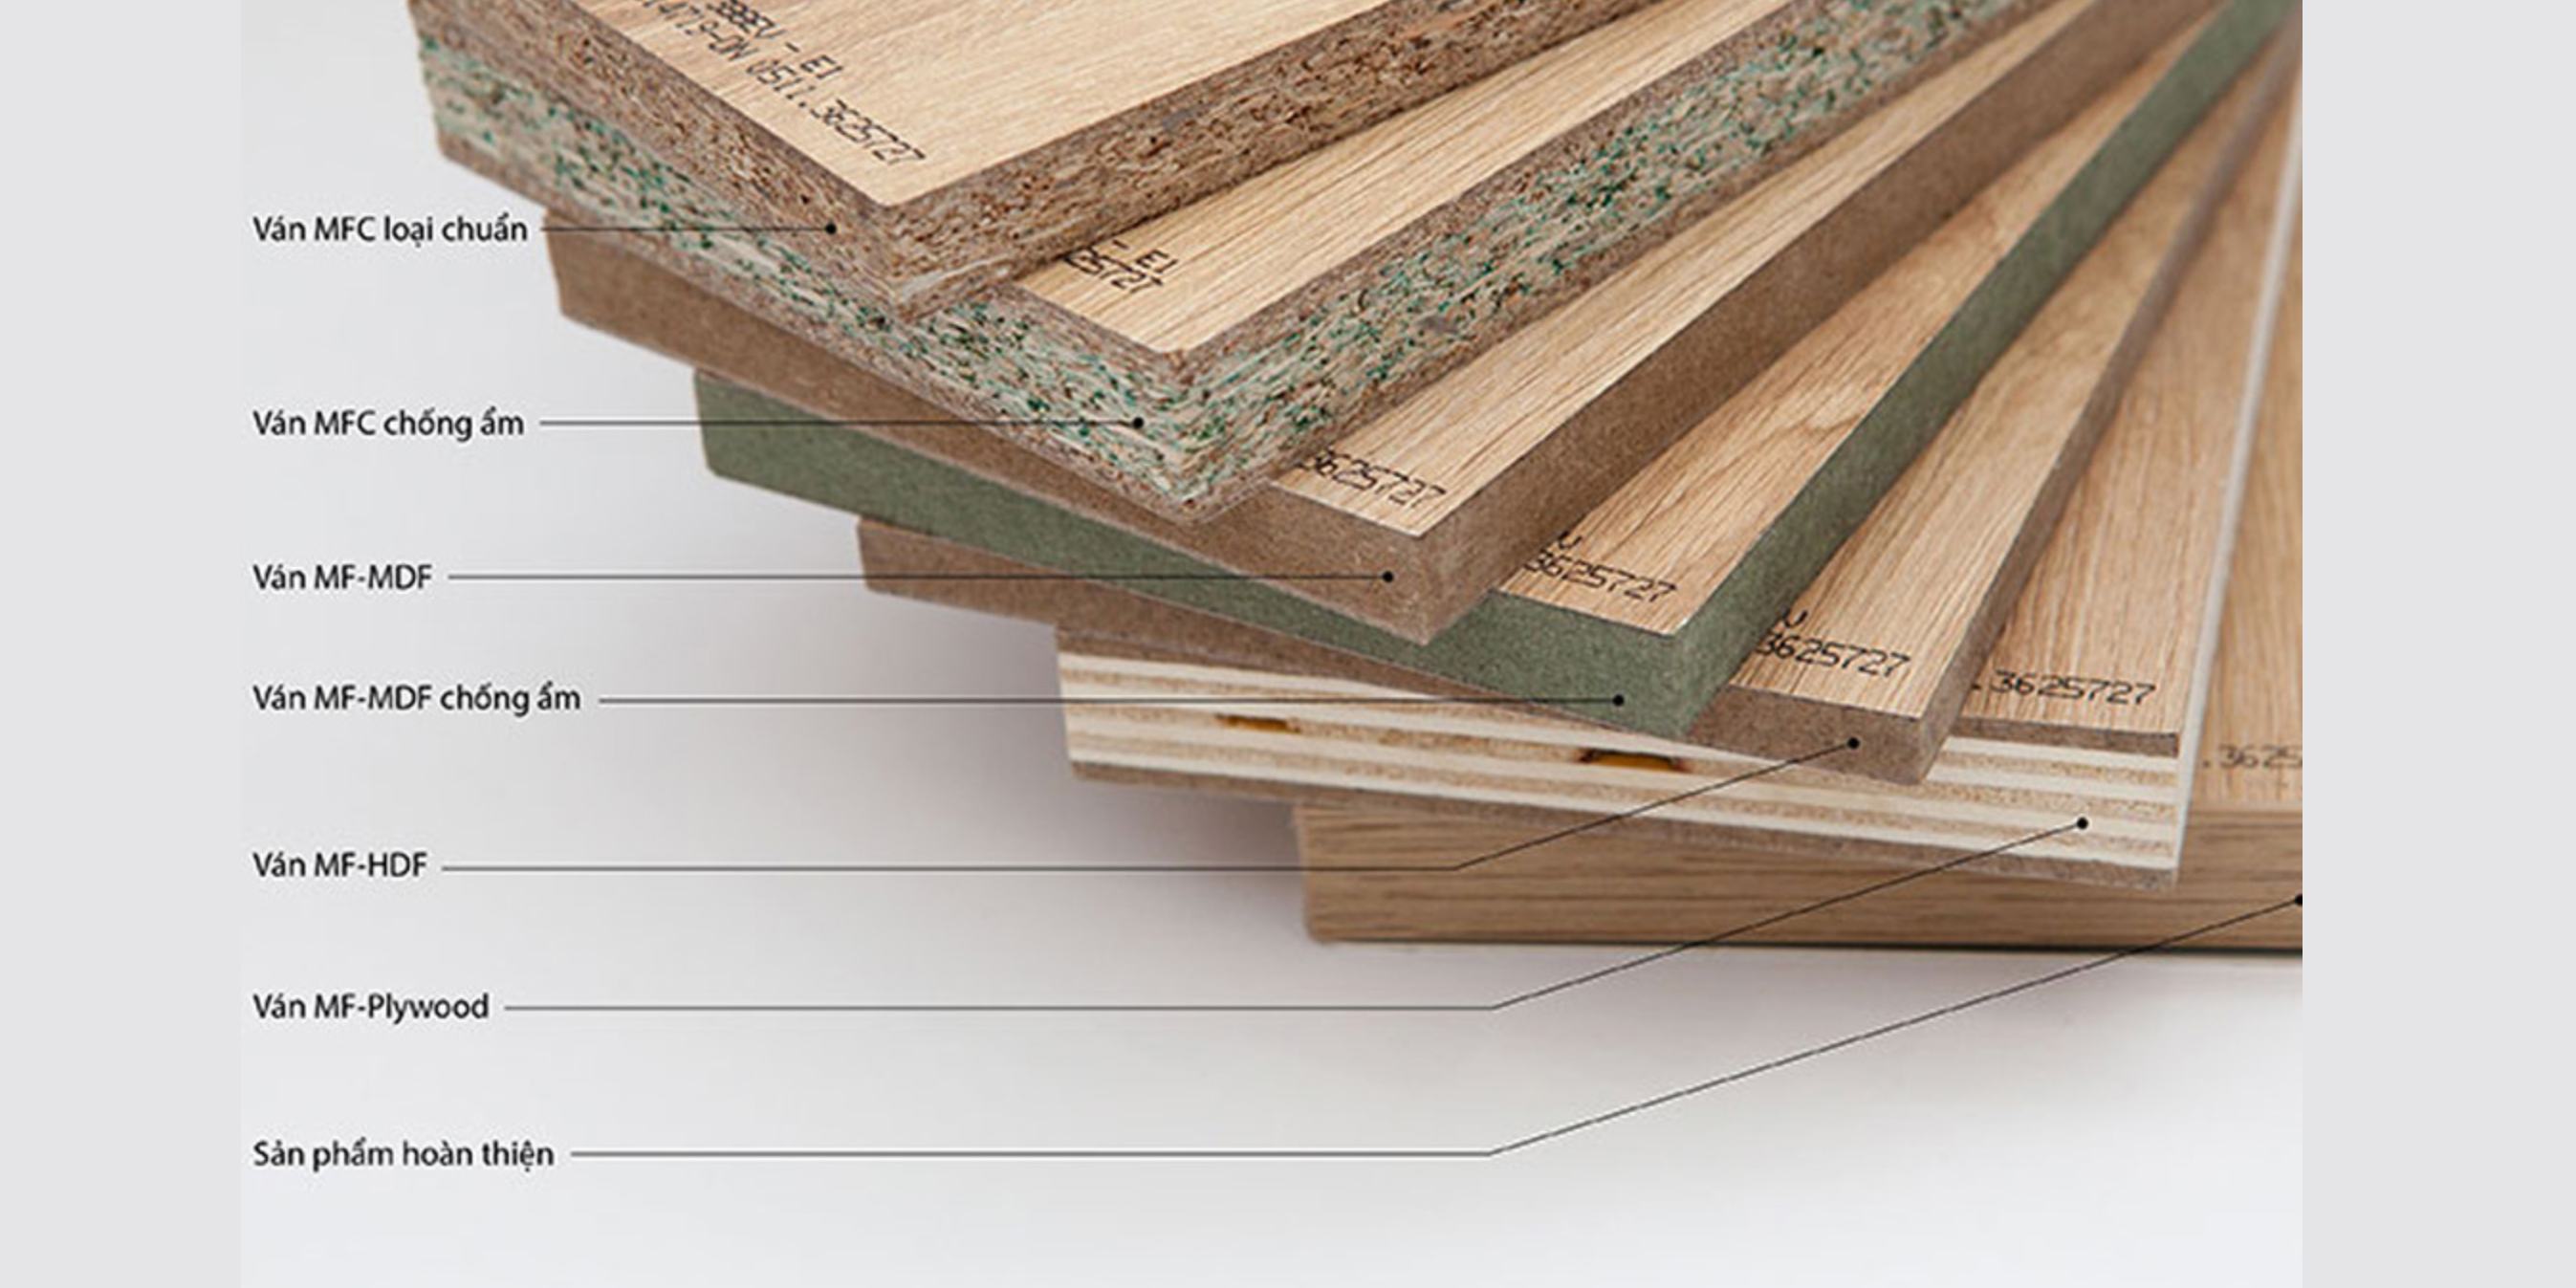 Gỗ plywood: Gỗ plywood với khả năng chịu lực mạnh mẽ và độ bền cao hiện đang được sử dụng rộng rãi trong ngành xây dựng và trang trí nội thất. Với công nghệ sản xuất hiện đại, chất lượng gỗ plywood đã được nâng cao và trở thành lựa chọn ưu tiên cho các dự án lớn. Hãy đến xem hình ảnh liên quan tới gỗ plywood để khám phá những ứng dụng đa dạng của loại vật liệu này.